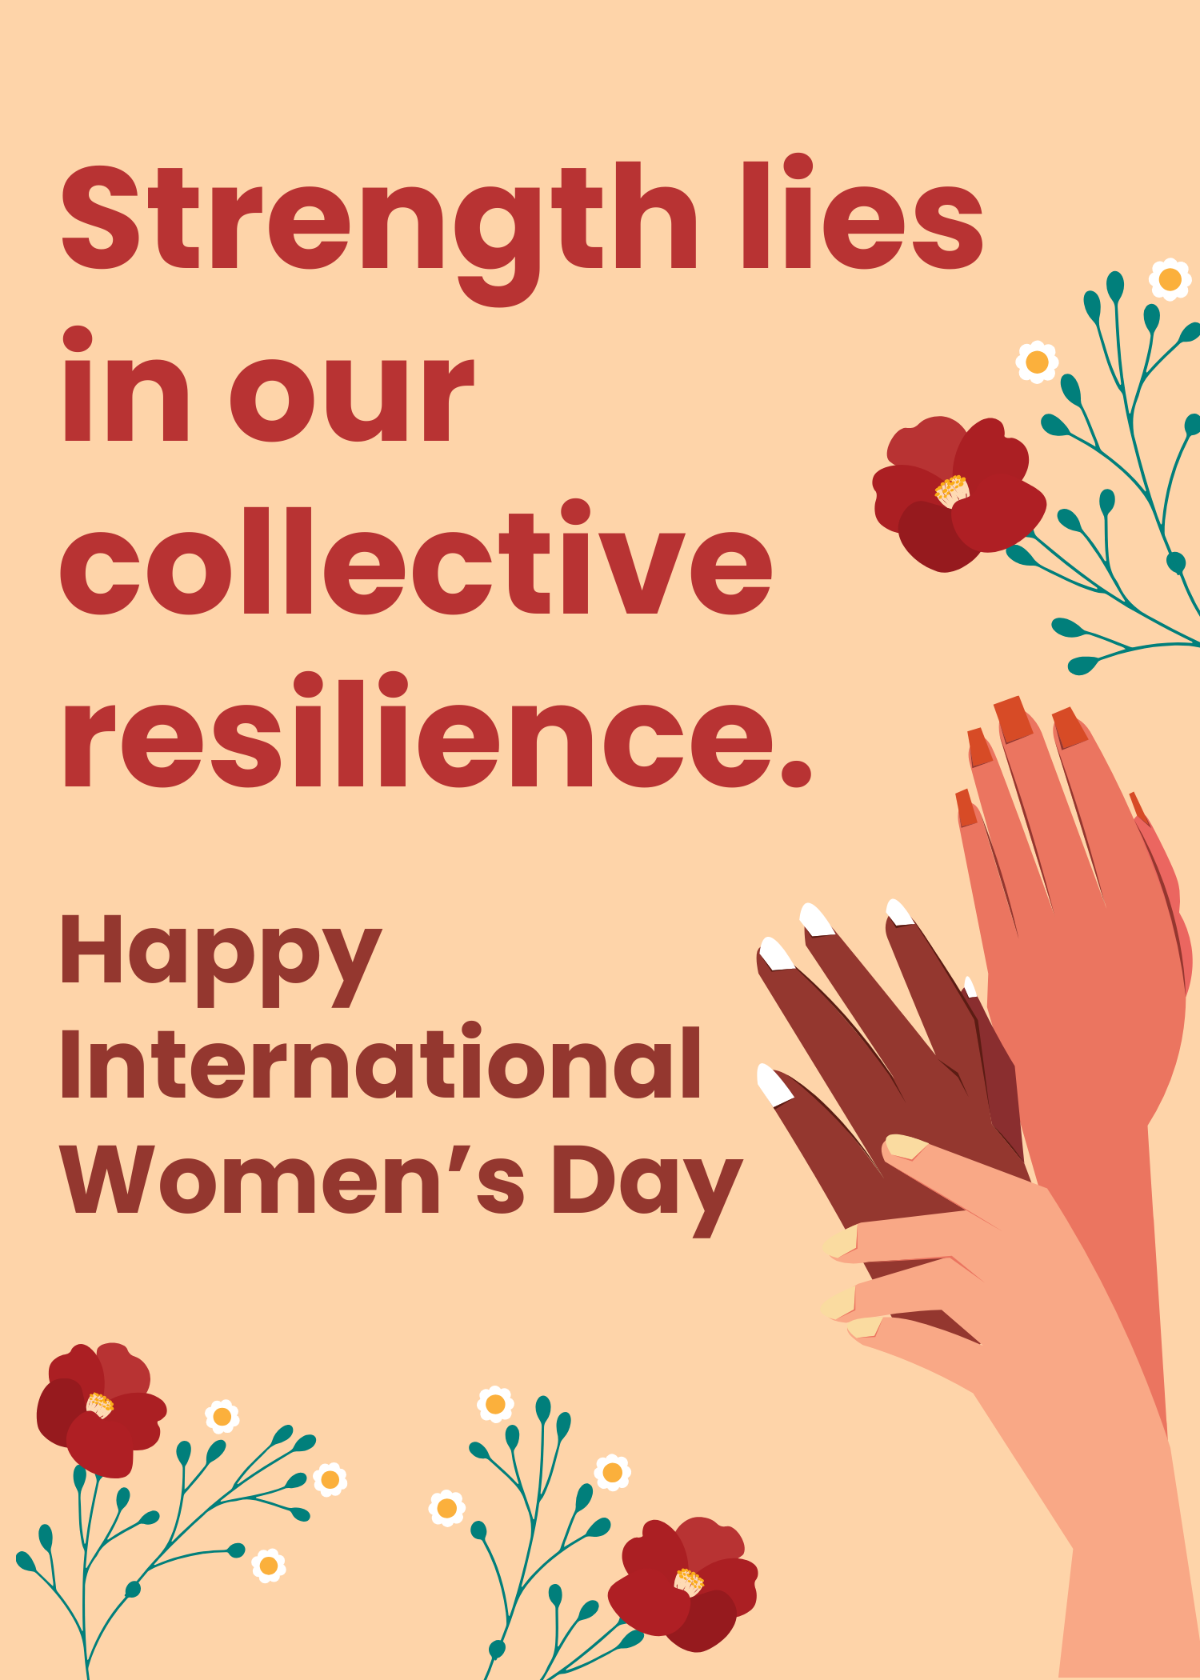 International Women's Day Card Messages Template